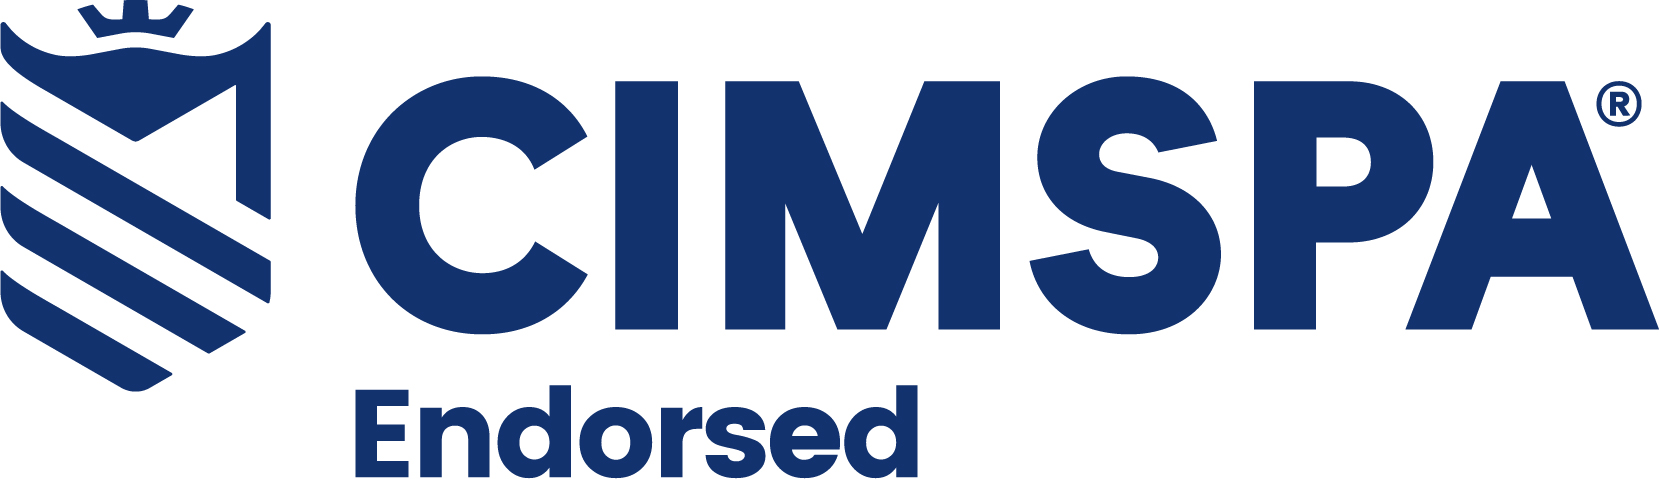 CIMSPA Endorsed logo